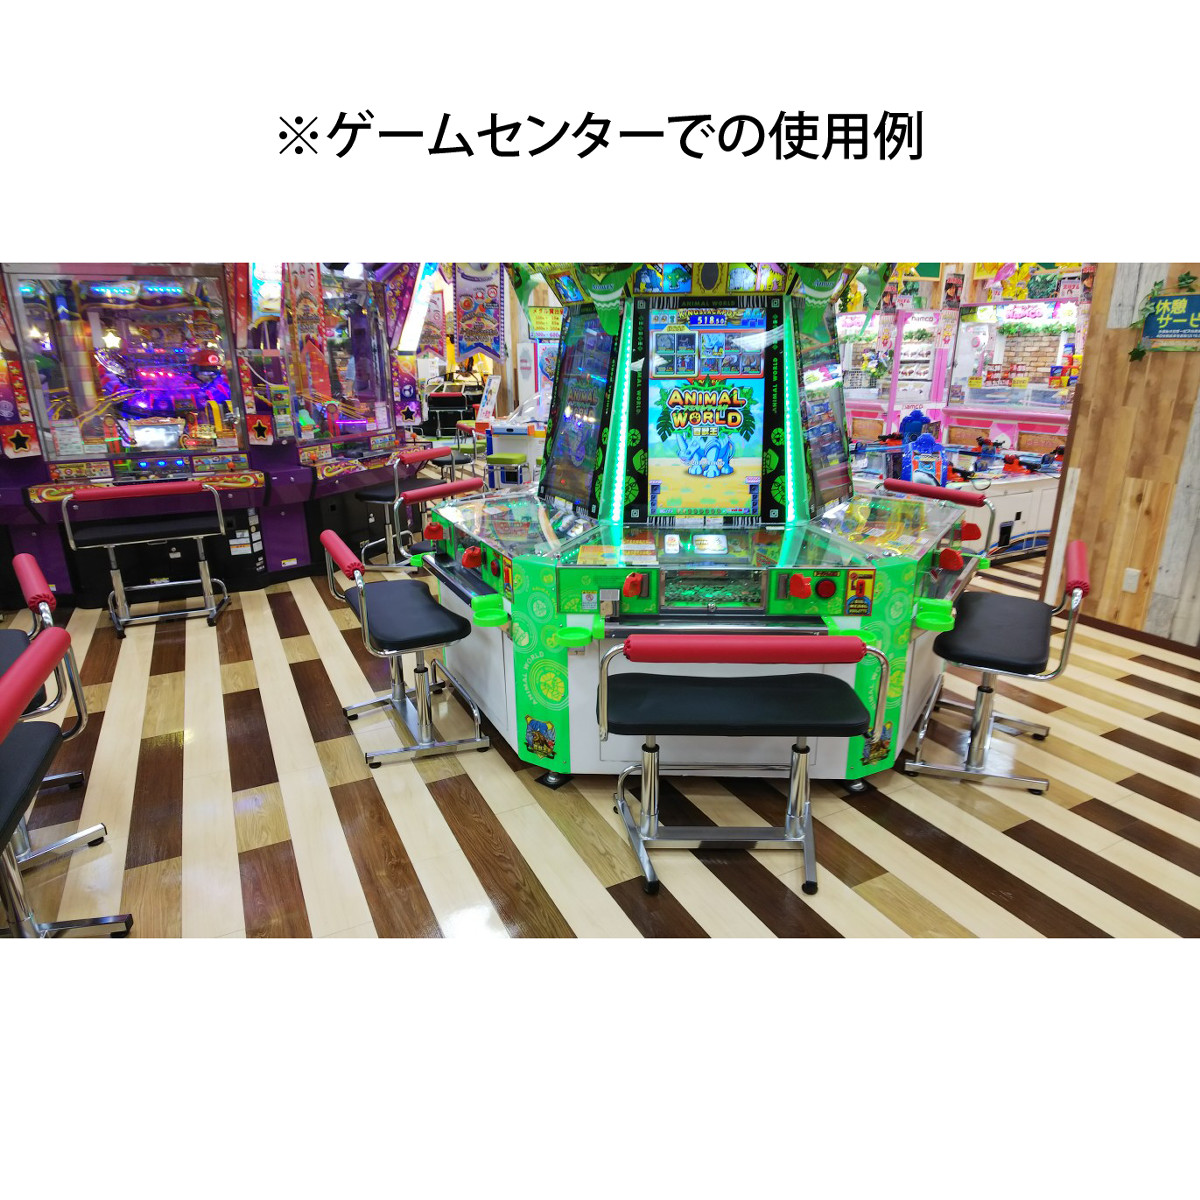 【ゲームセンター椅子】 アーケードゲーム機用 背もたれ付昇降式ペアベンチ【TB2-18WM】